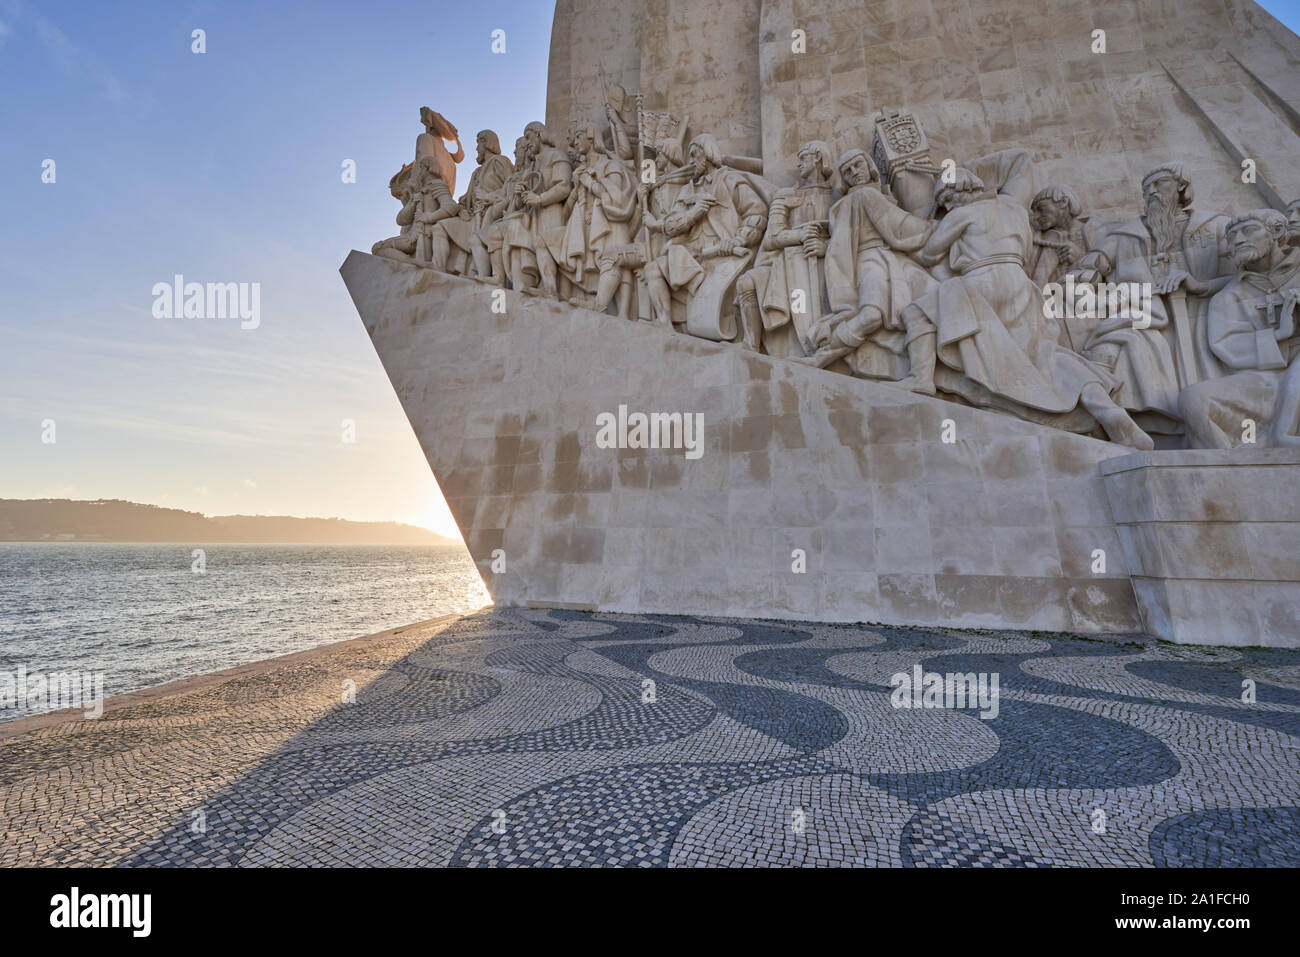 Denkmal der Entdeckungen - weißer Stein Schiff förmiges Monument hageln Prinz Heinrich und der Portugiesischen, die die Straßen des Meer, Portugal entdeckt Stockfoto